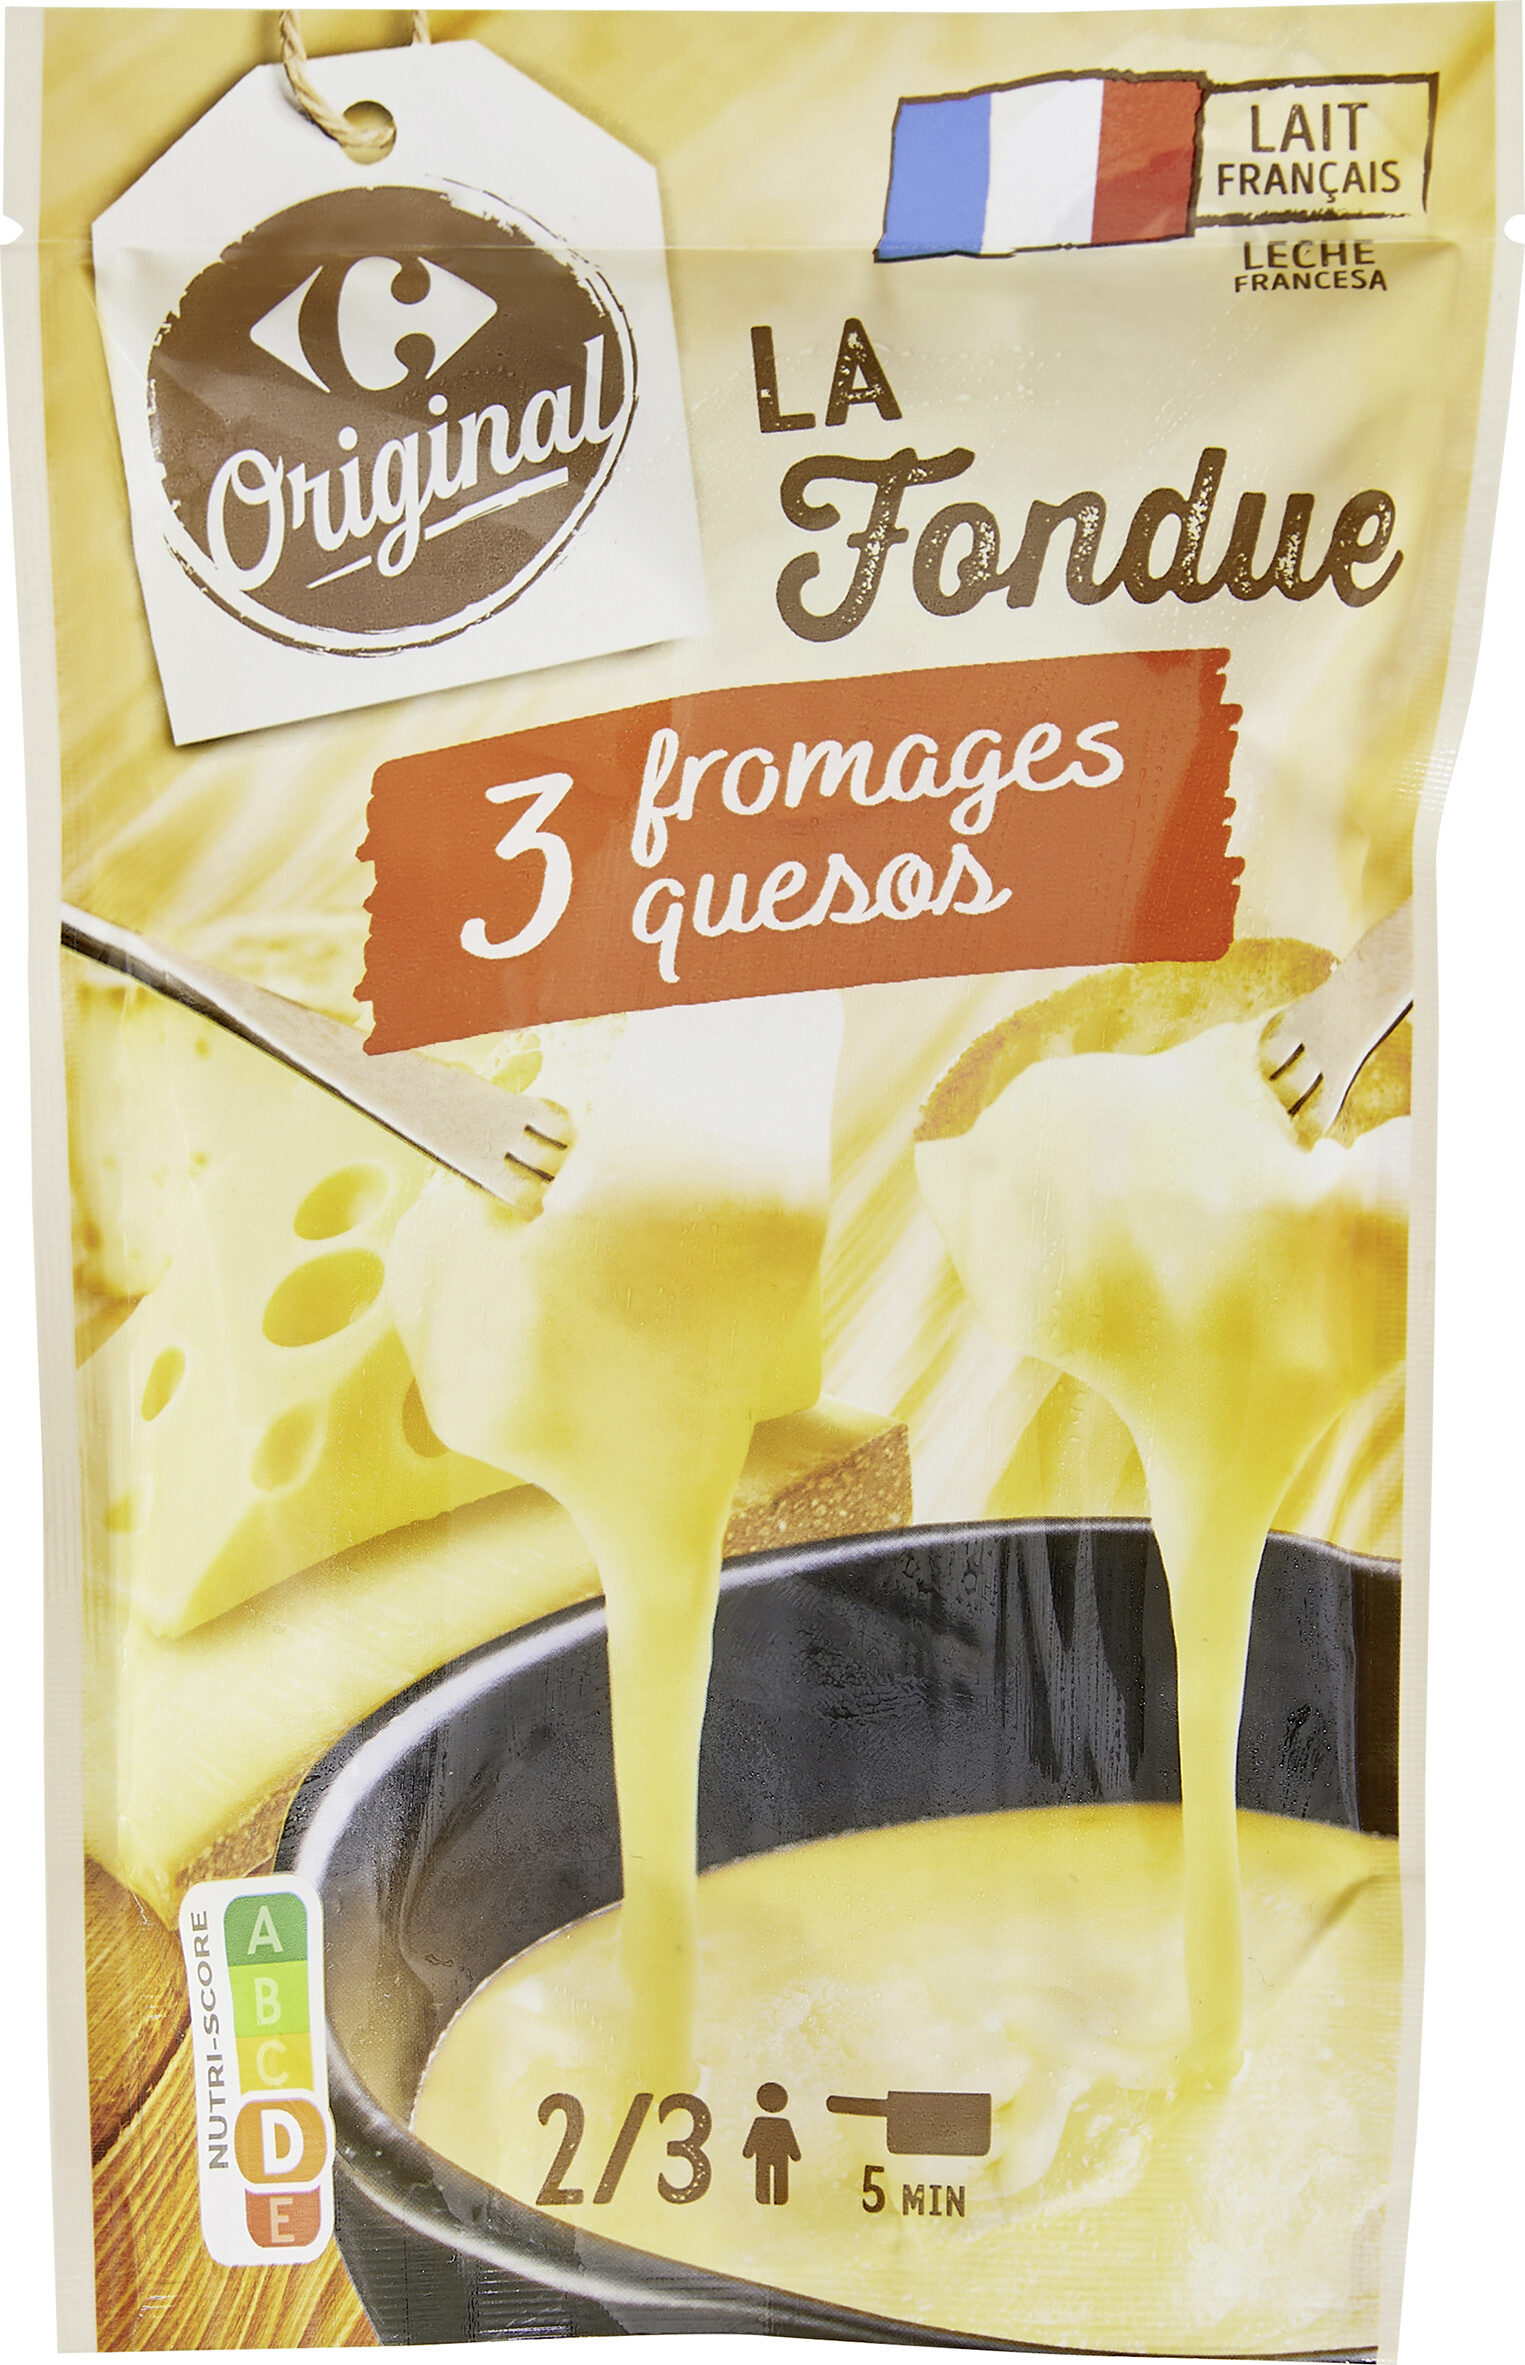 La Fondue 3 fromages - Producte - fr